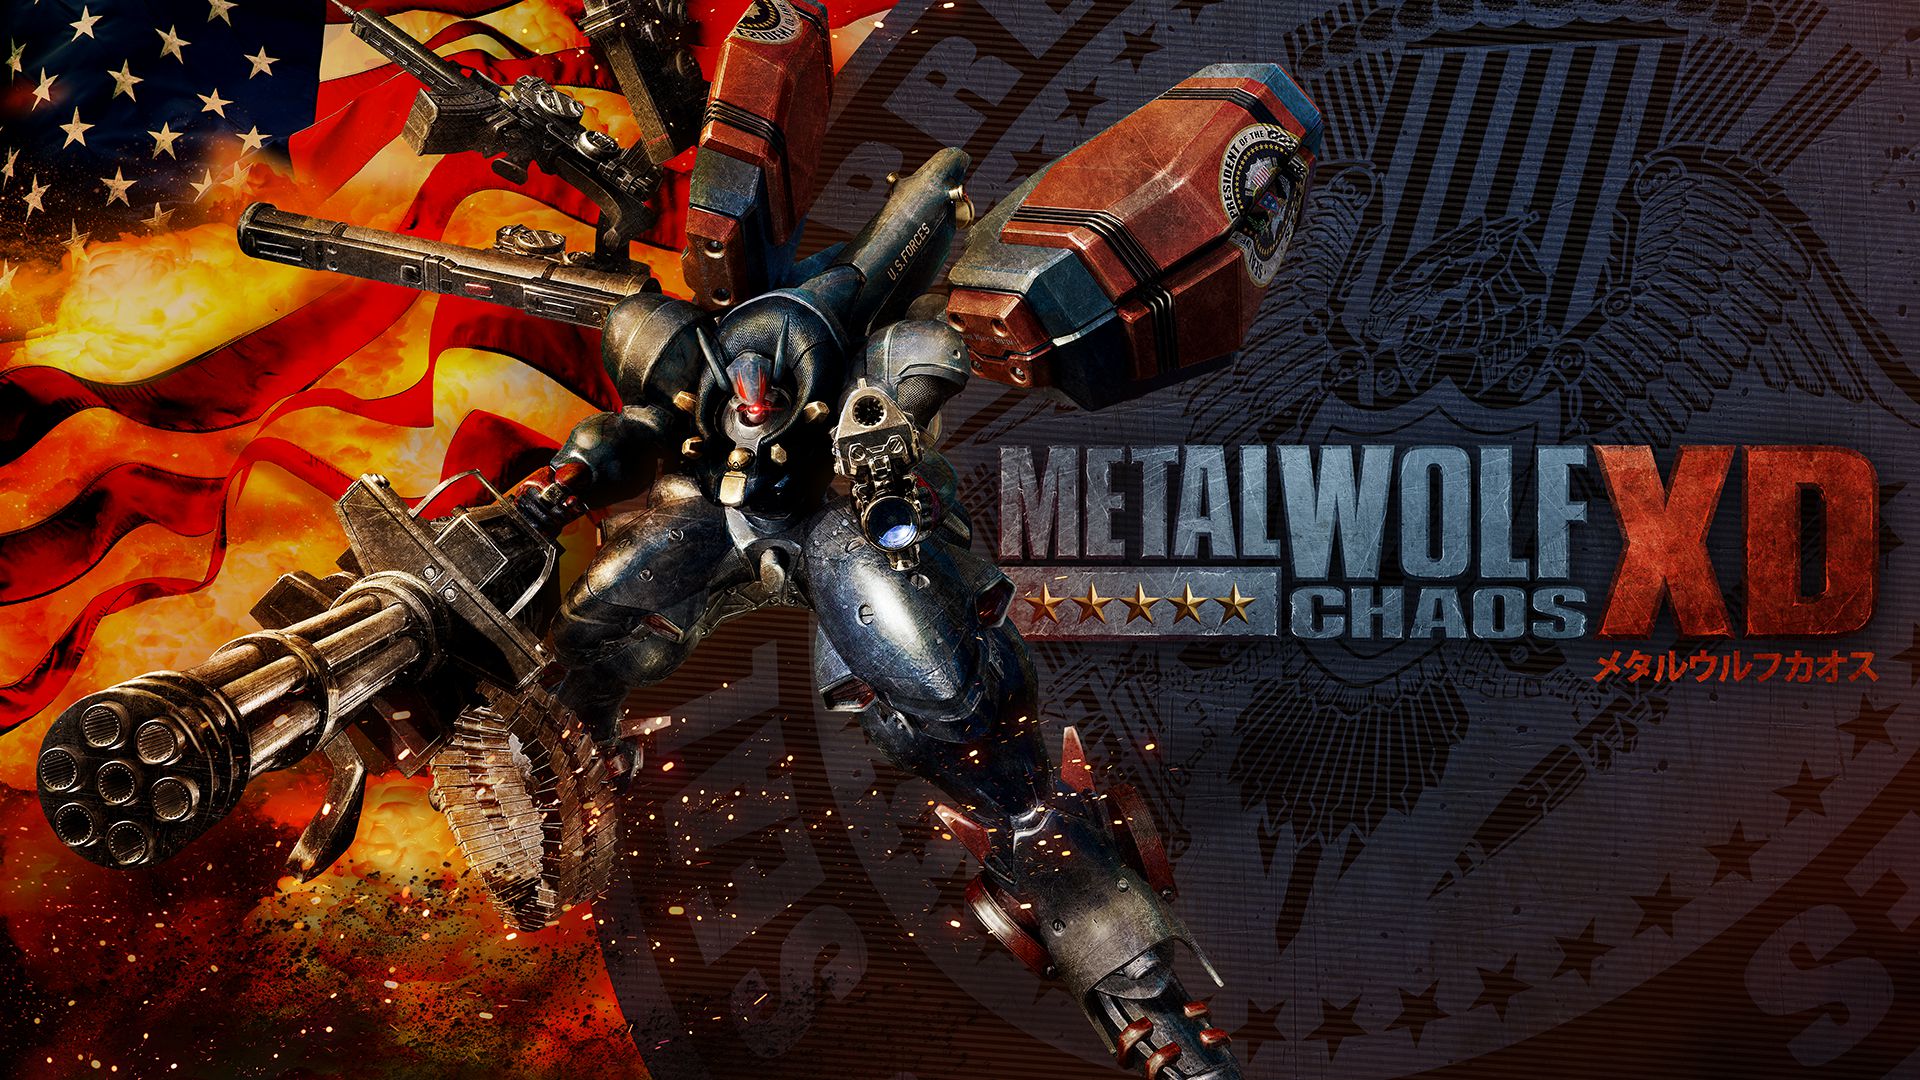 Metal Wolf Chaos XD Principal